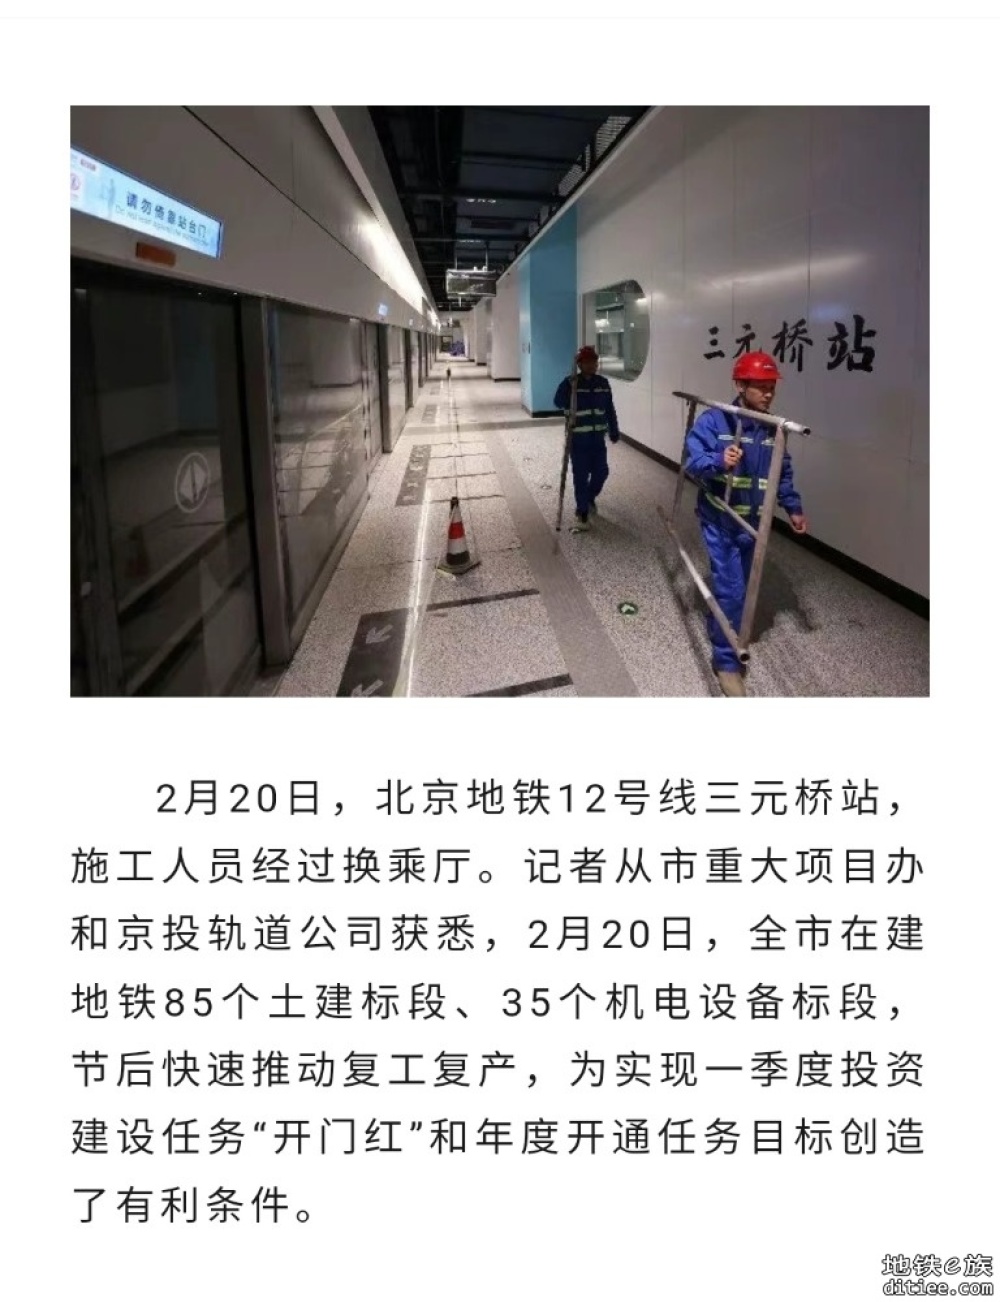 北京轨道交通建设快速推动复工复产